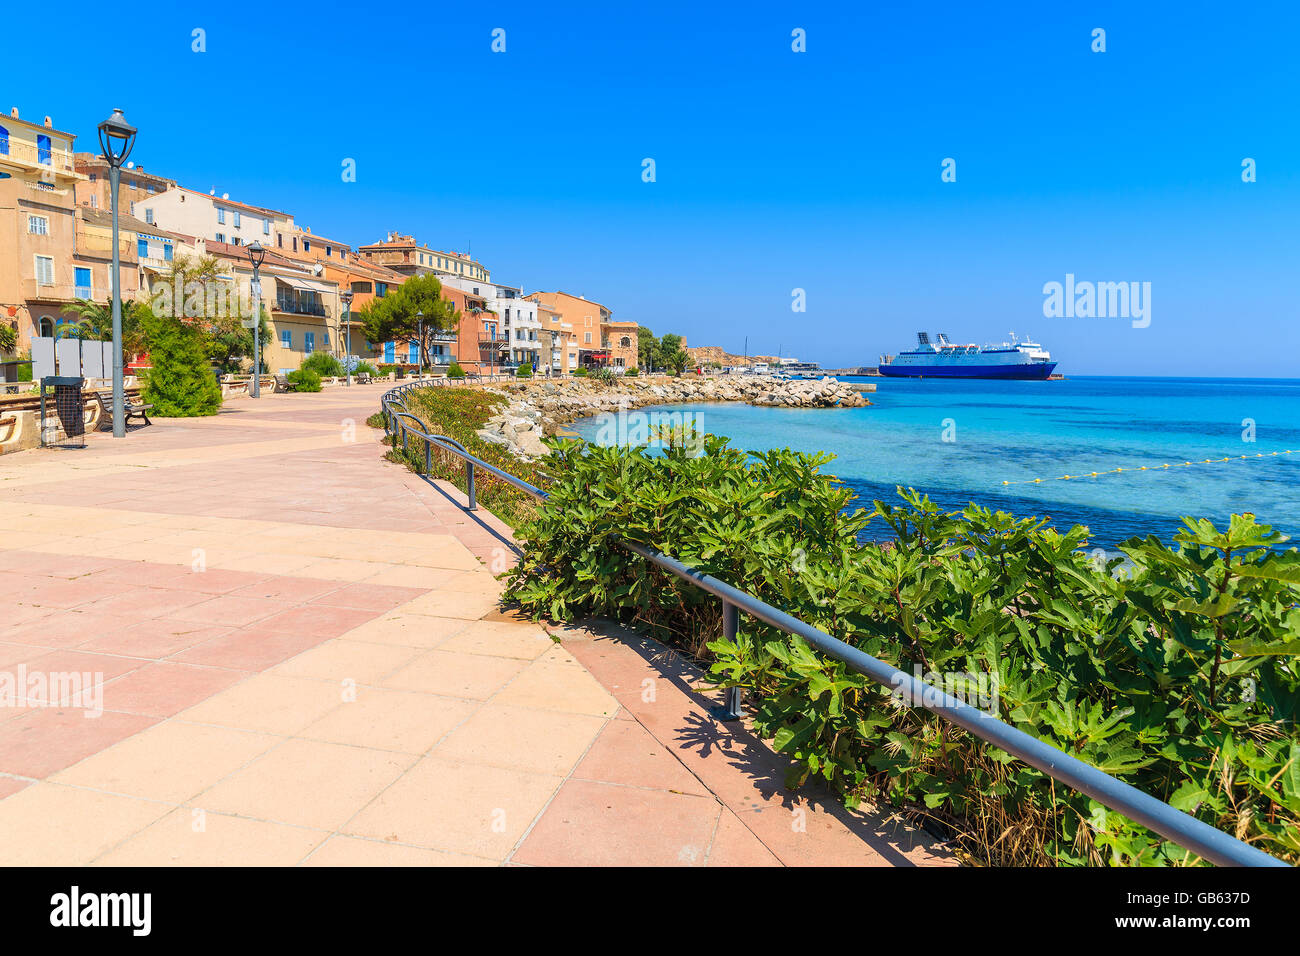 Promenade along sea in Ile Rousse coastal town, Corsica island, France Stock Photo